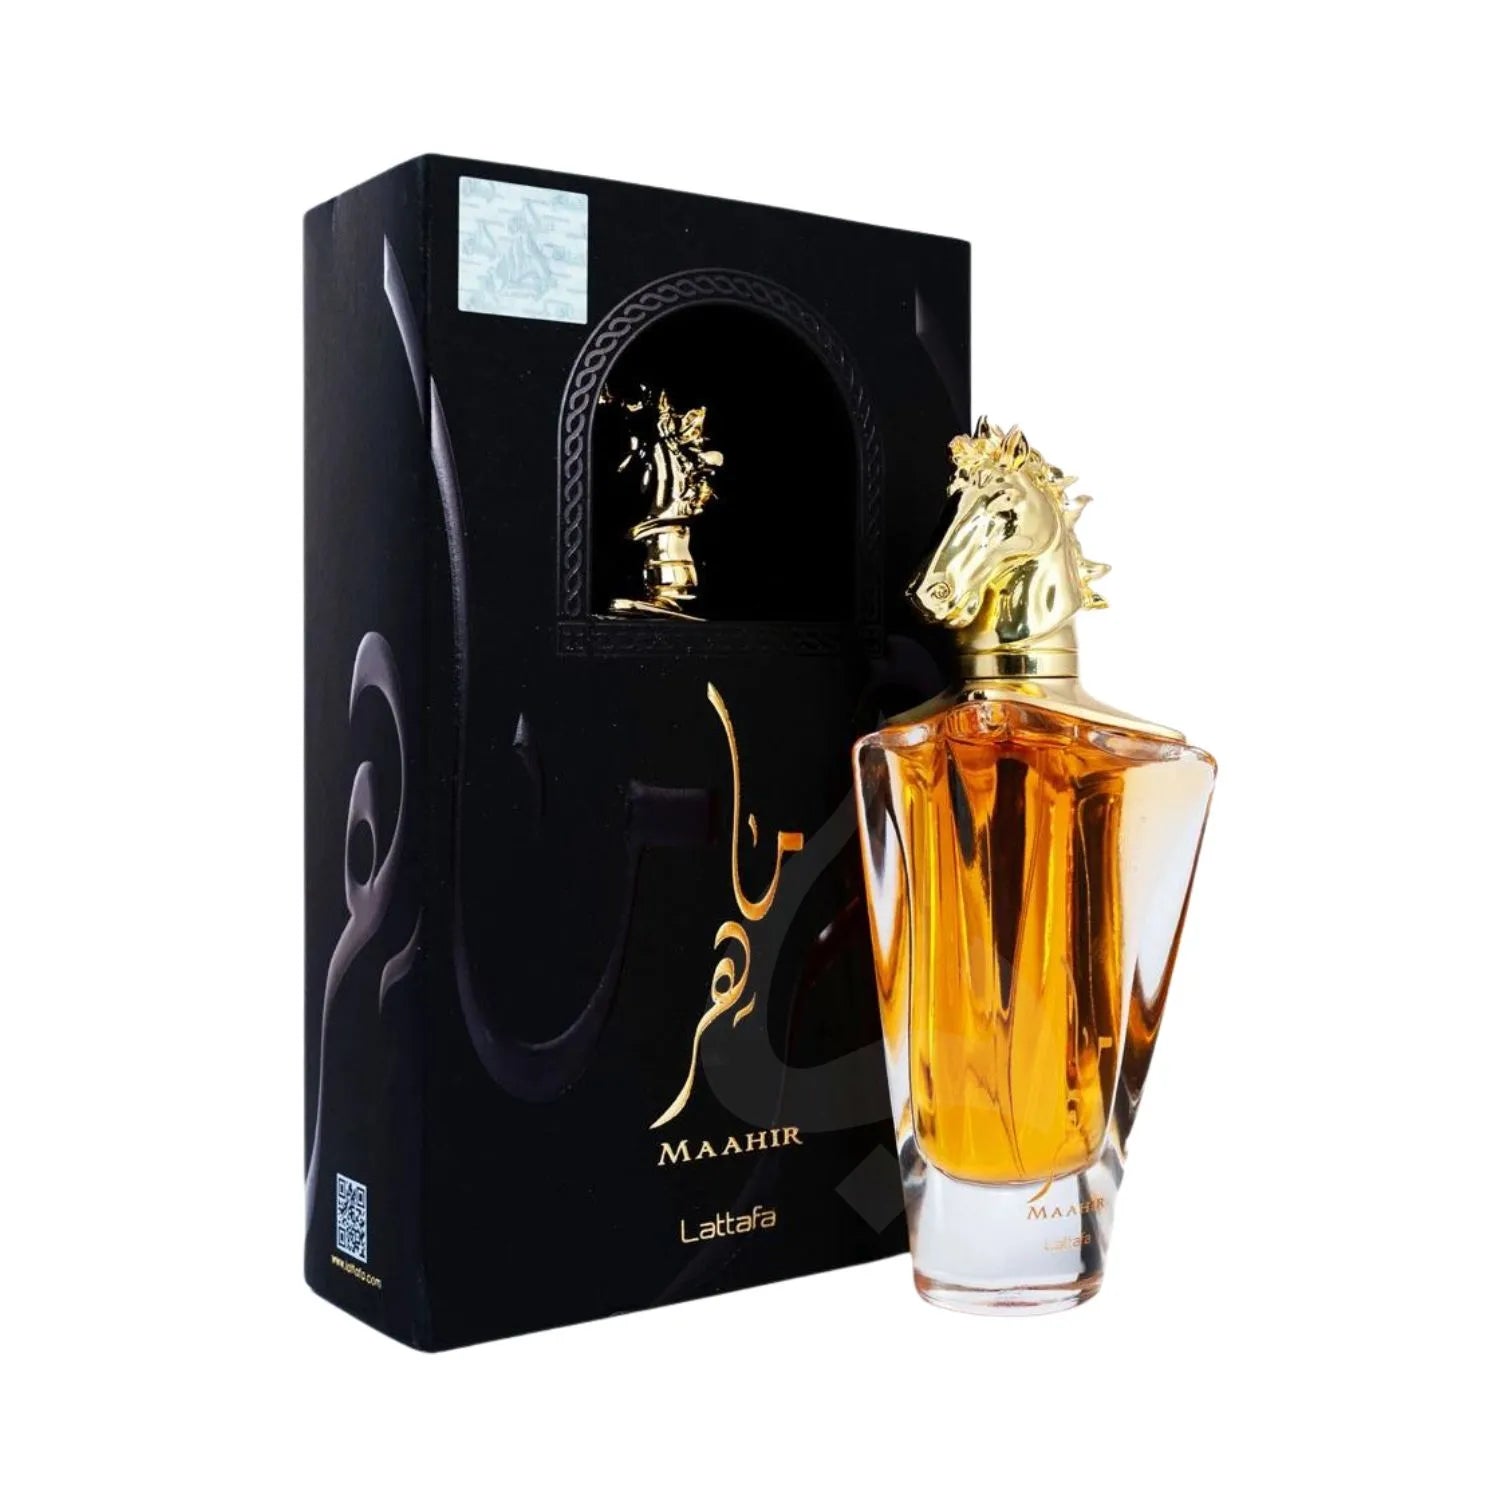 Maahir Lattafa Perfume Packing